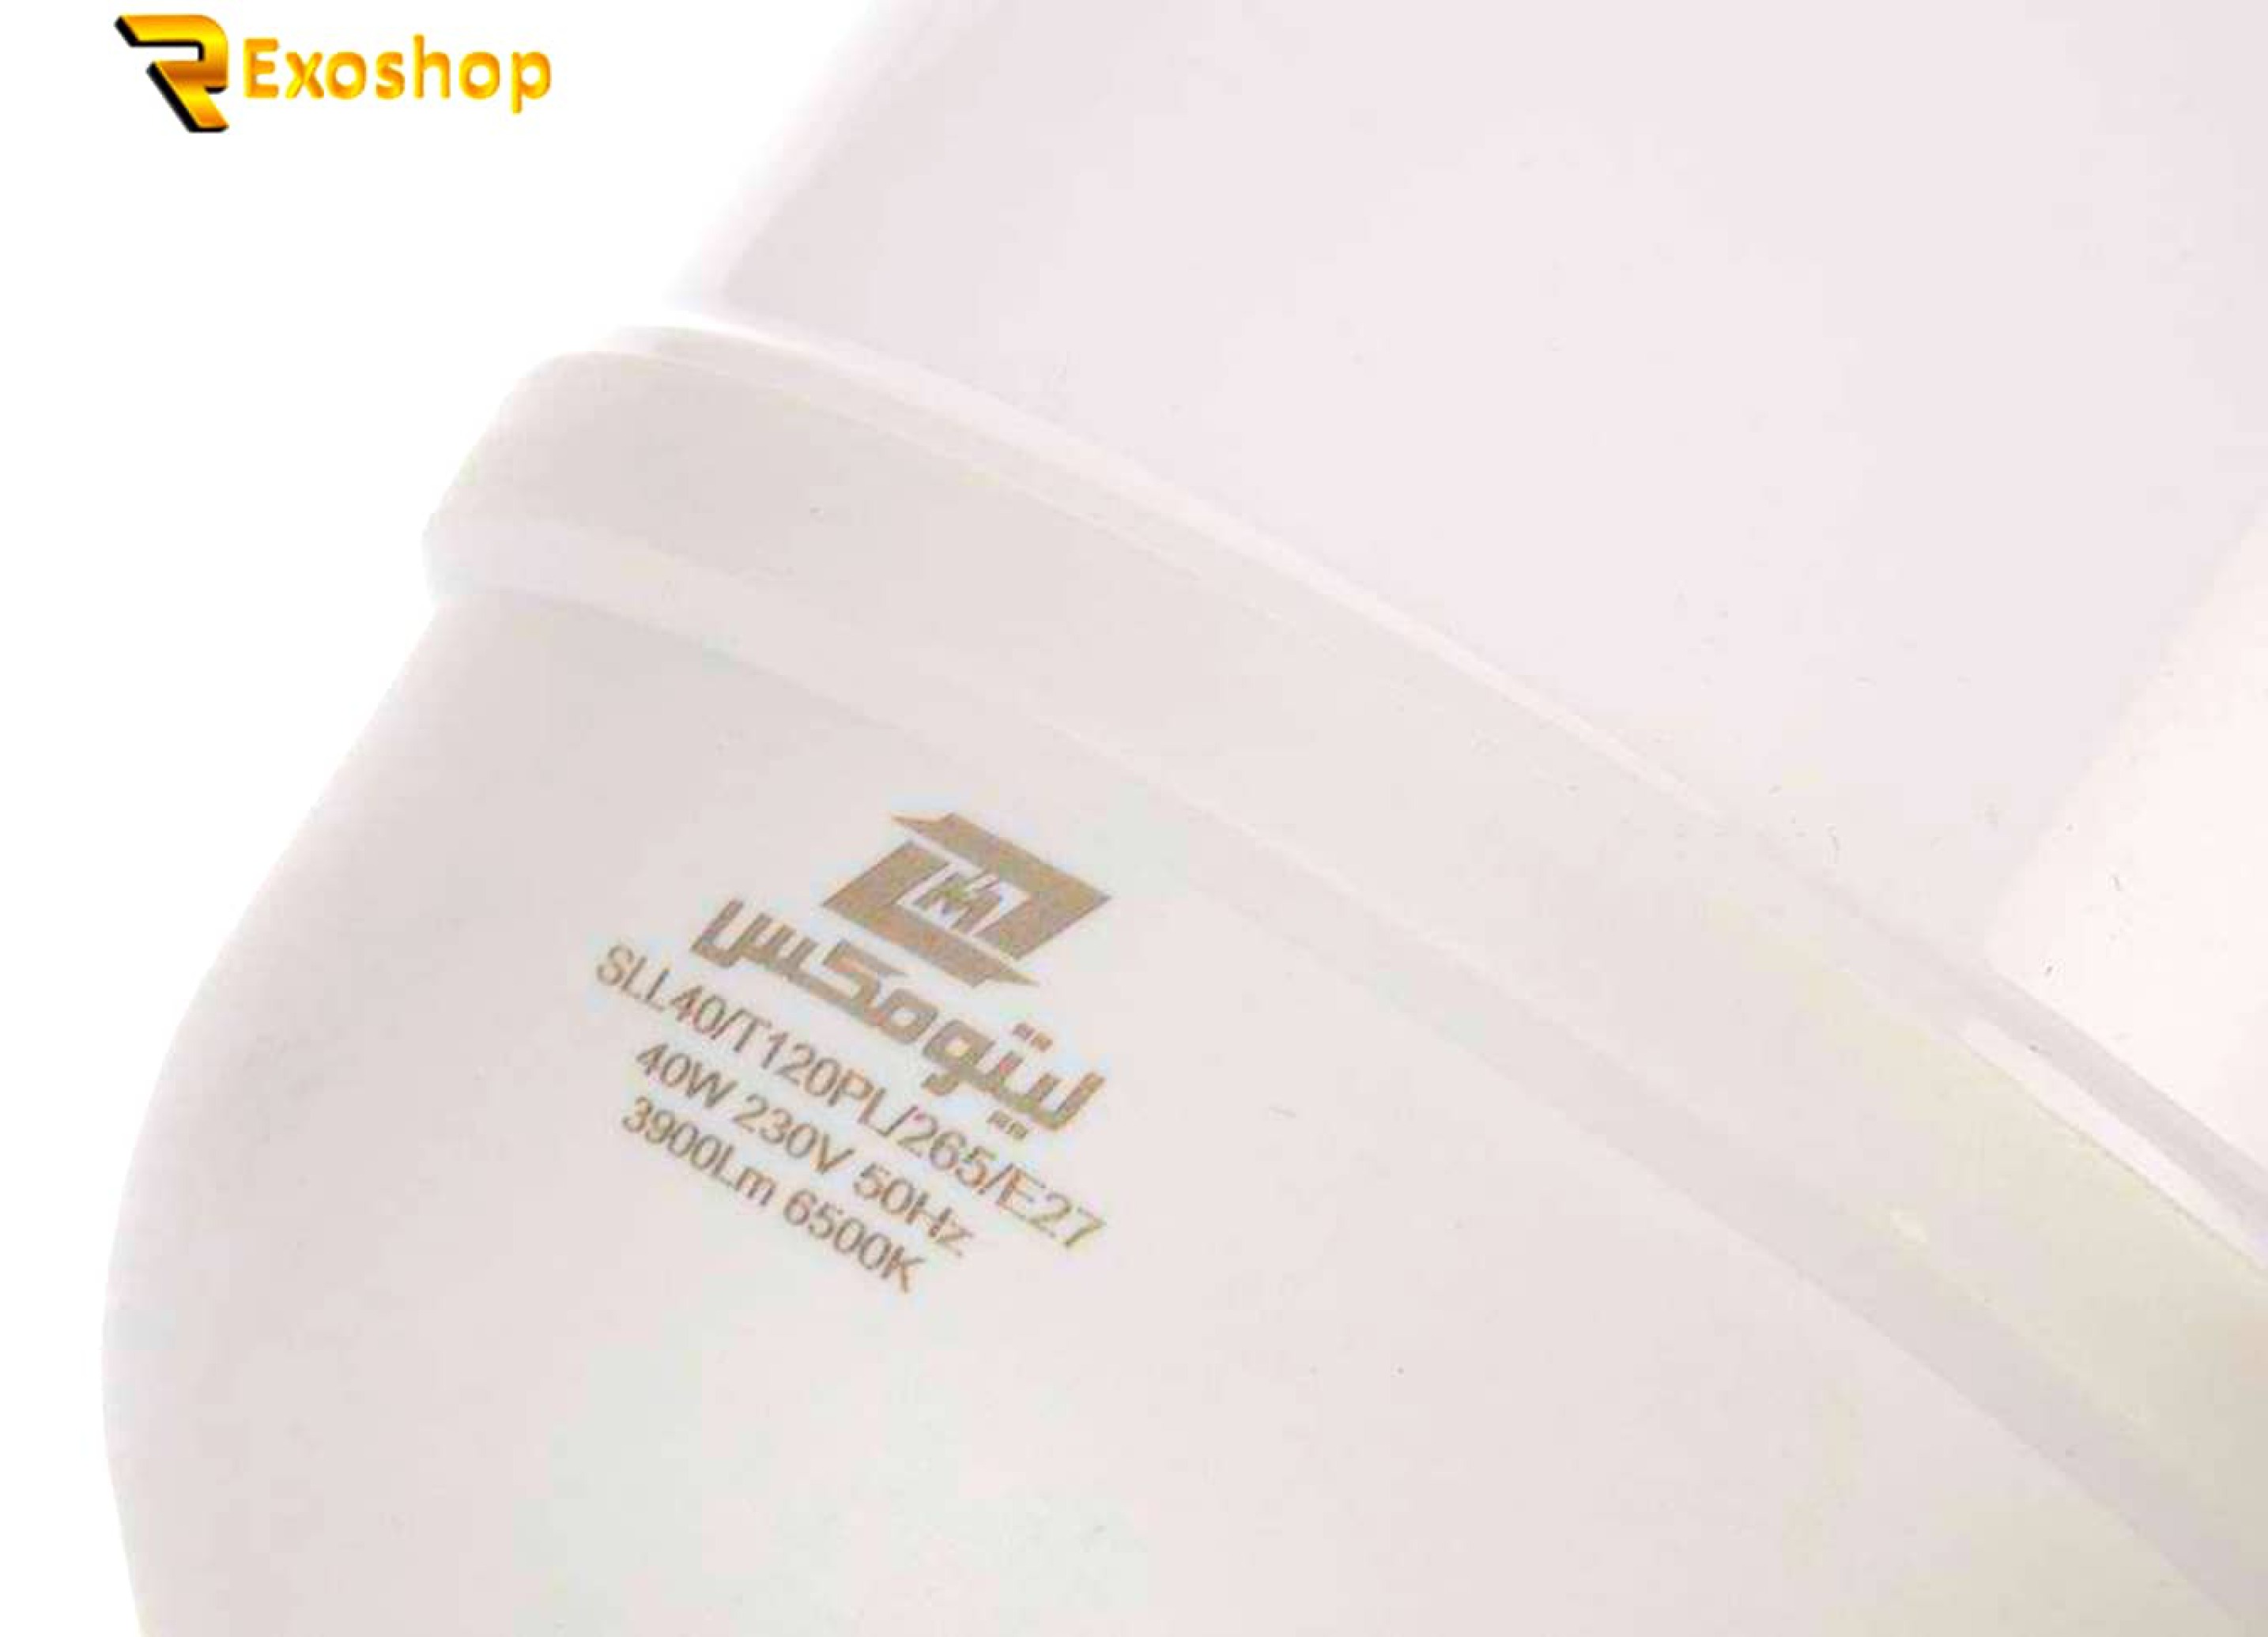  لامپ ال ای دی 40 وات لیتومکس مدل SLL40 پایه E27 یکی از بهترین نوع لامپ ها است که با قیمتی ارزان در رکسوشاپ موجود است 